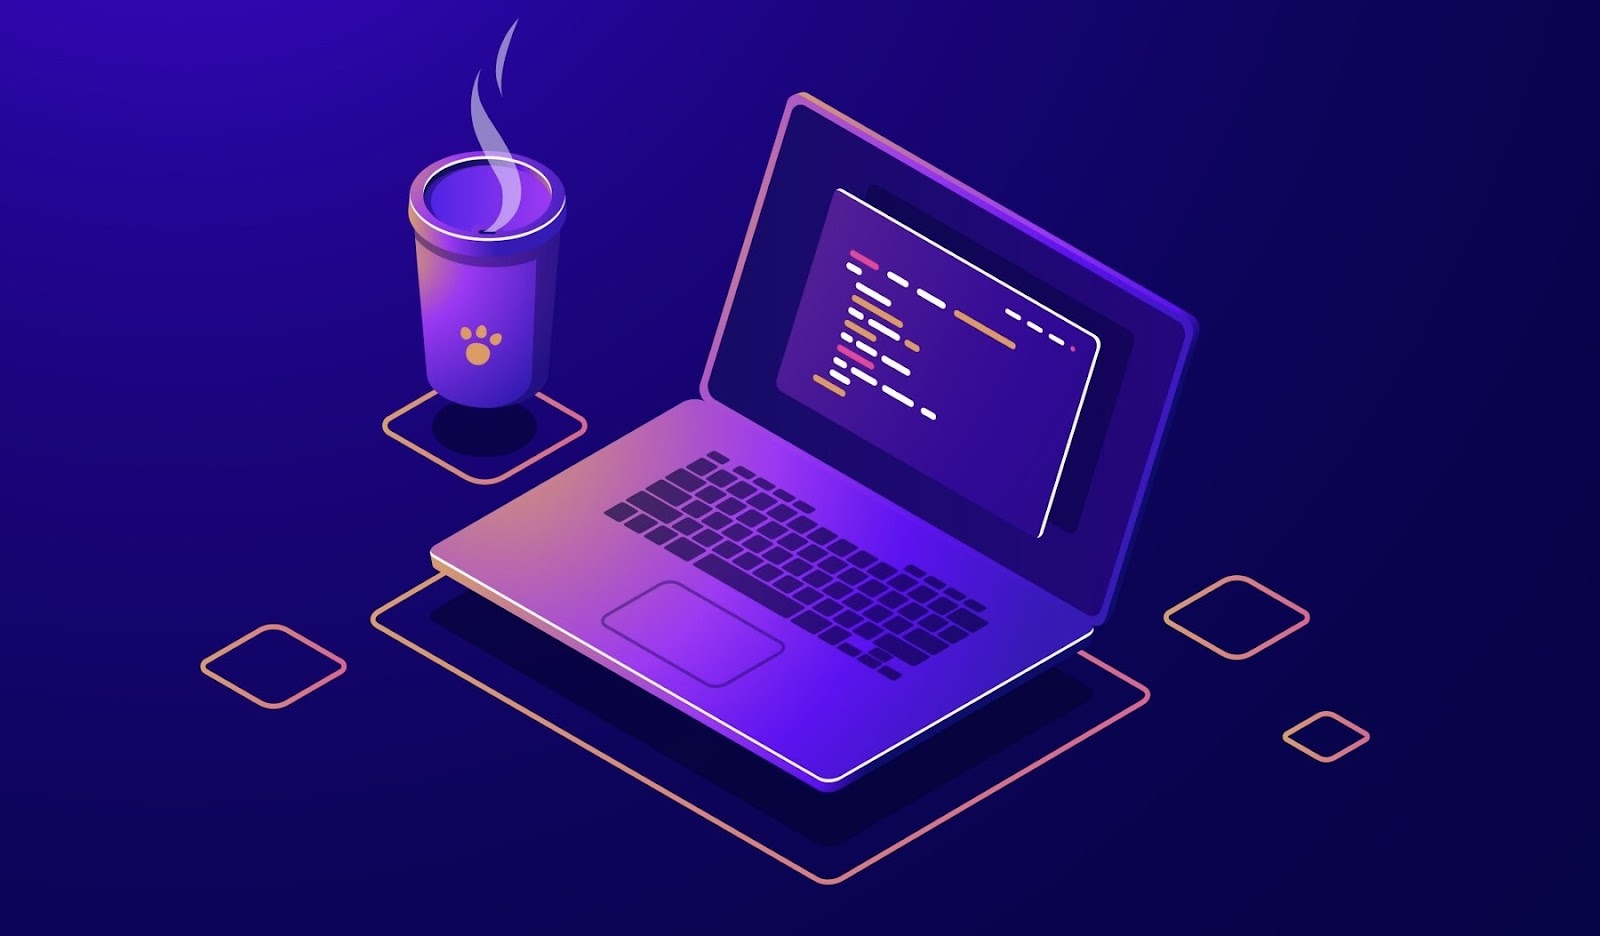 Laptop with program code icon